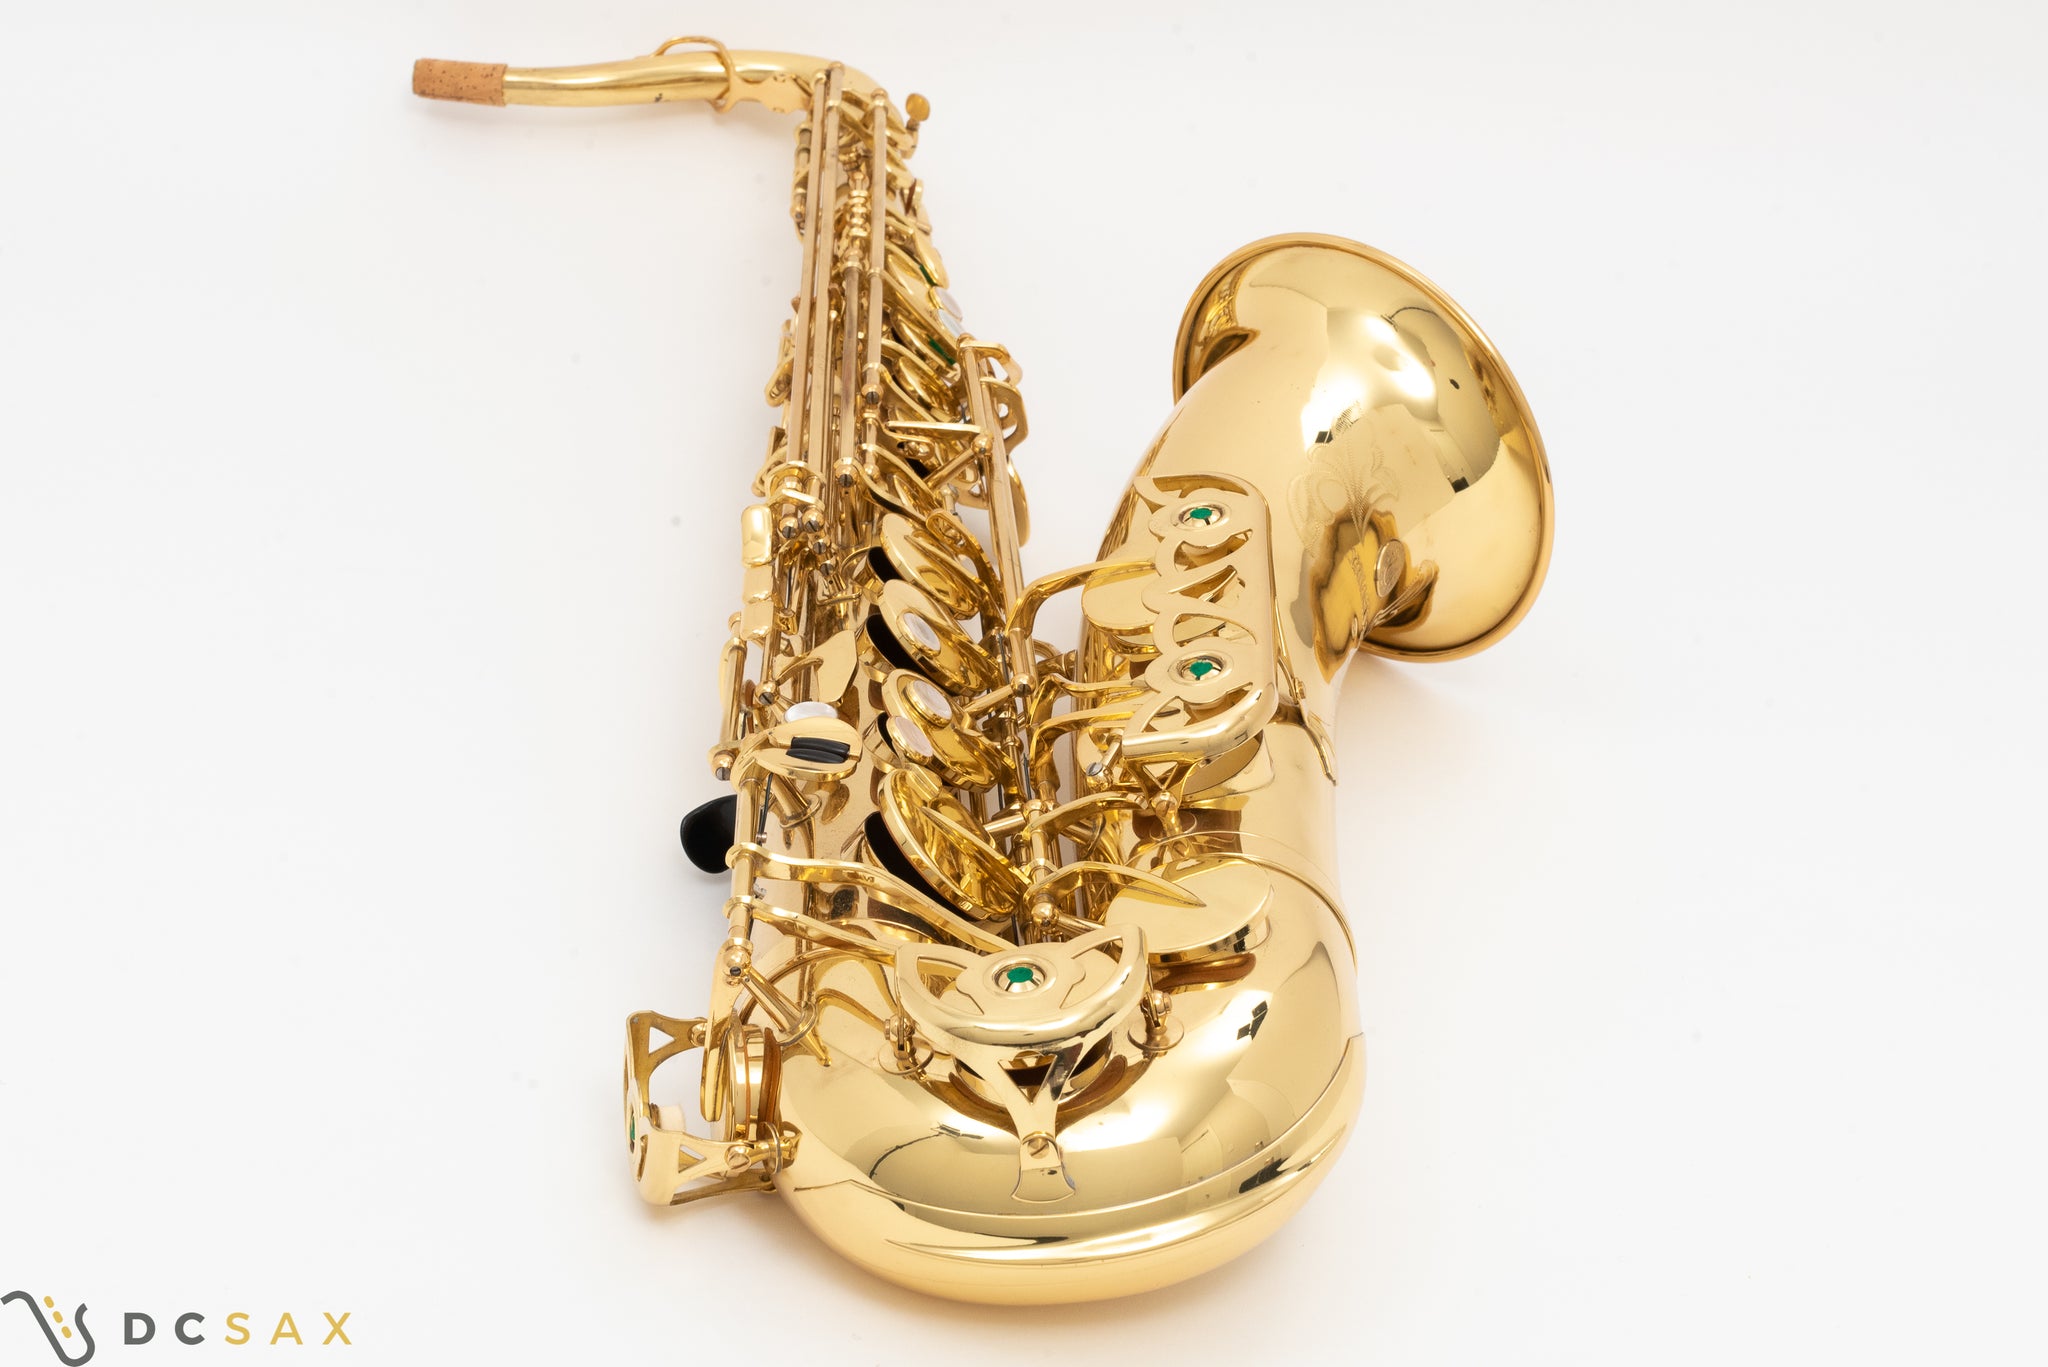 Yanagisawa 880 Tenor Saxophone, Near Mint, Just Serviced, Video